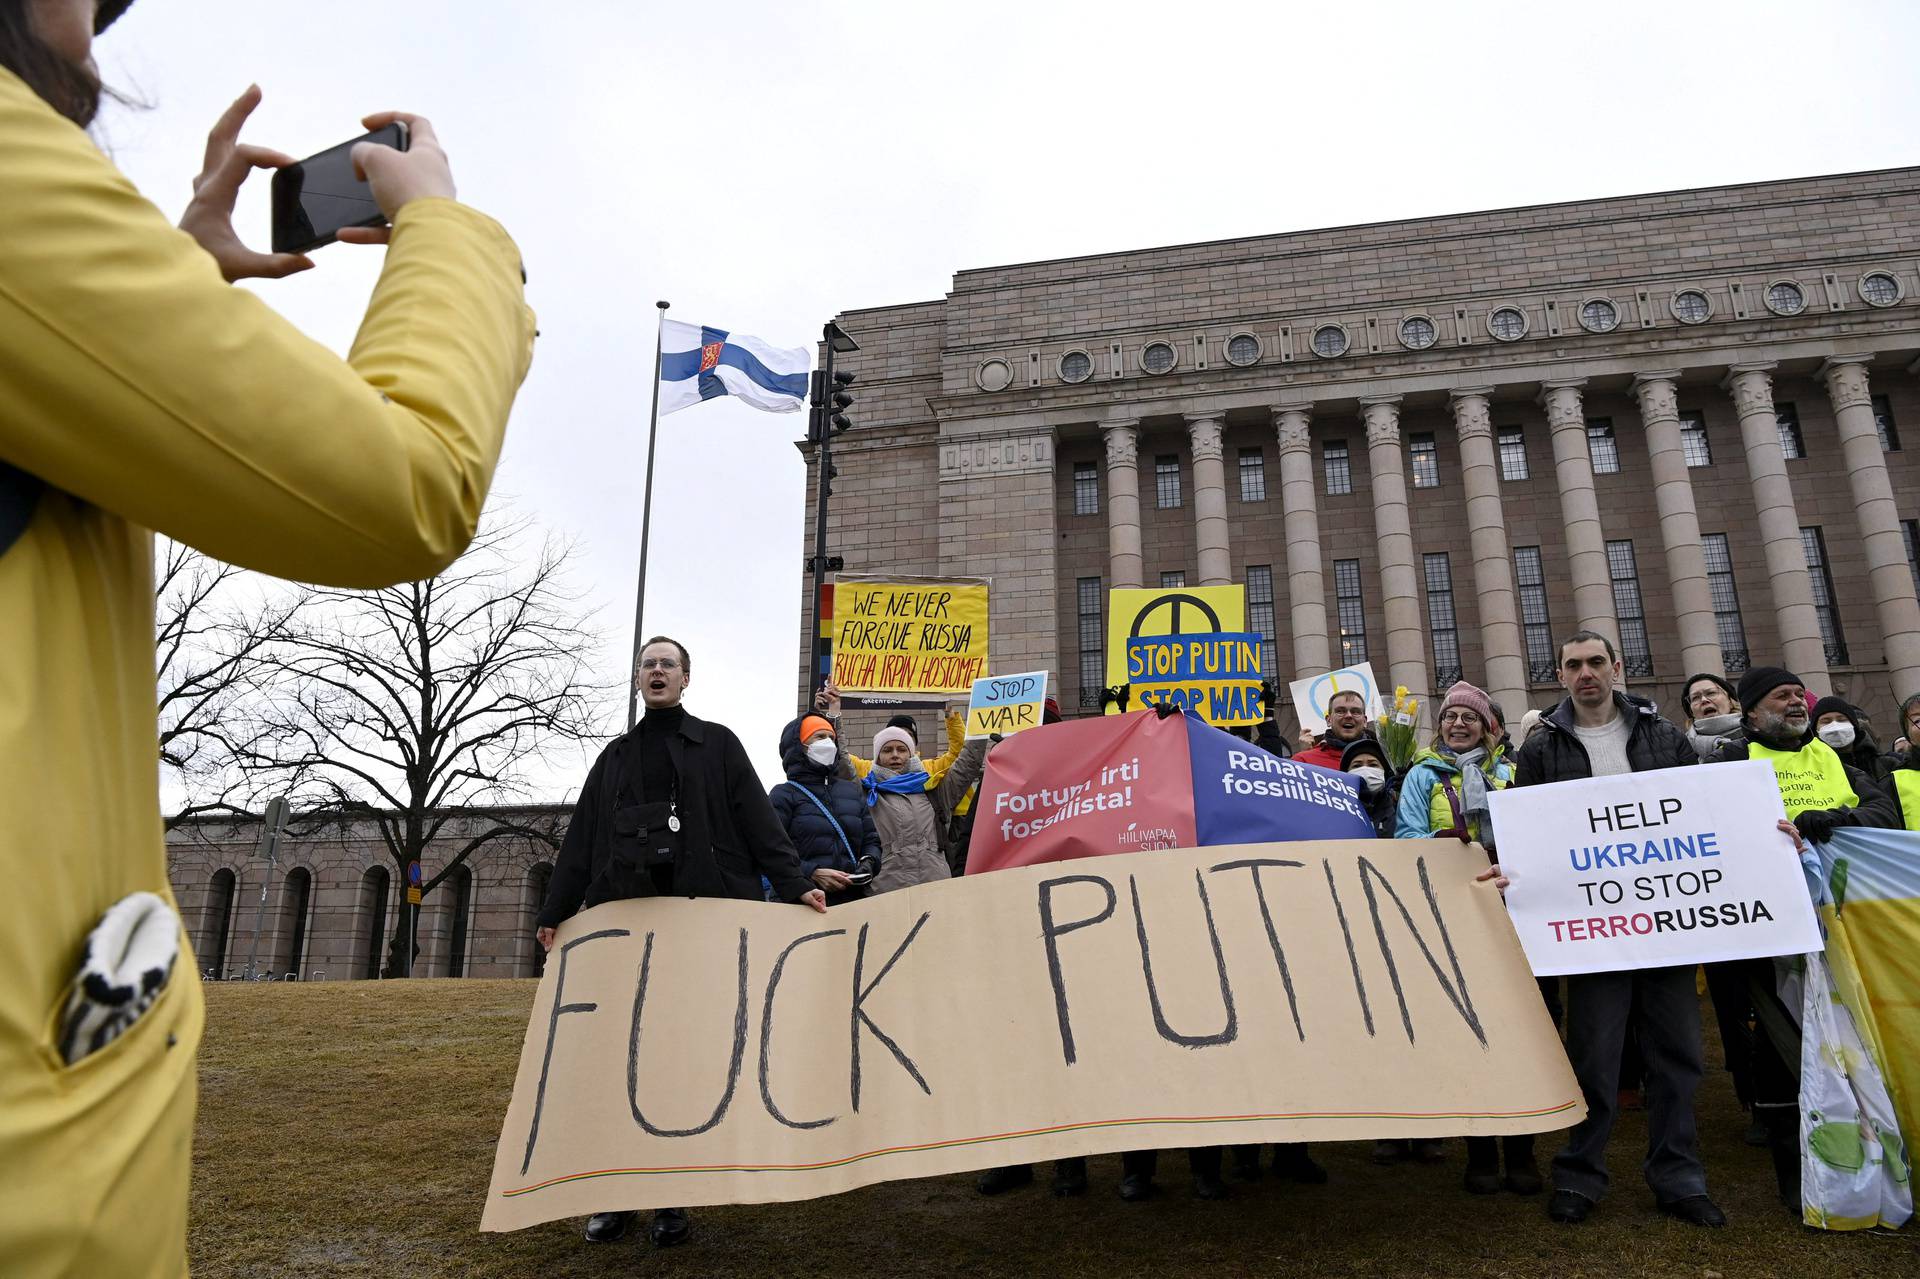 People attend a demonstration in support of Ukraine in Helsinki